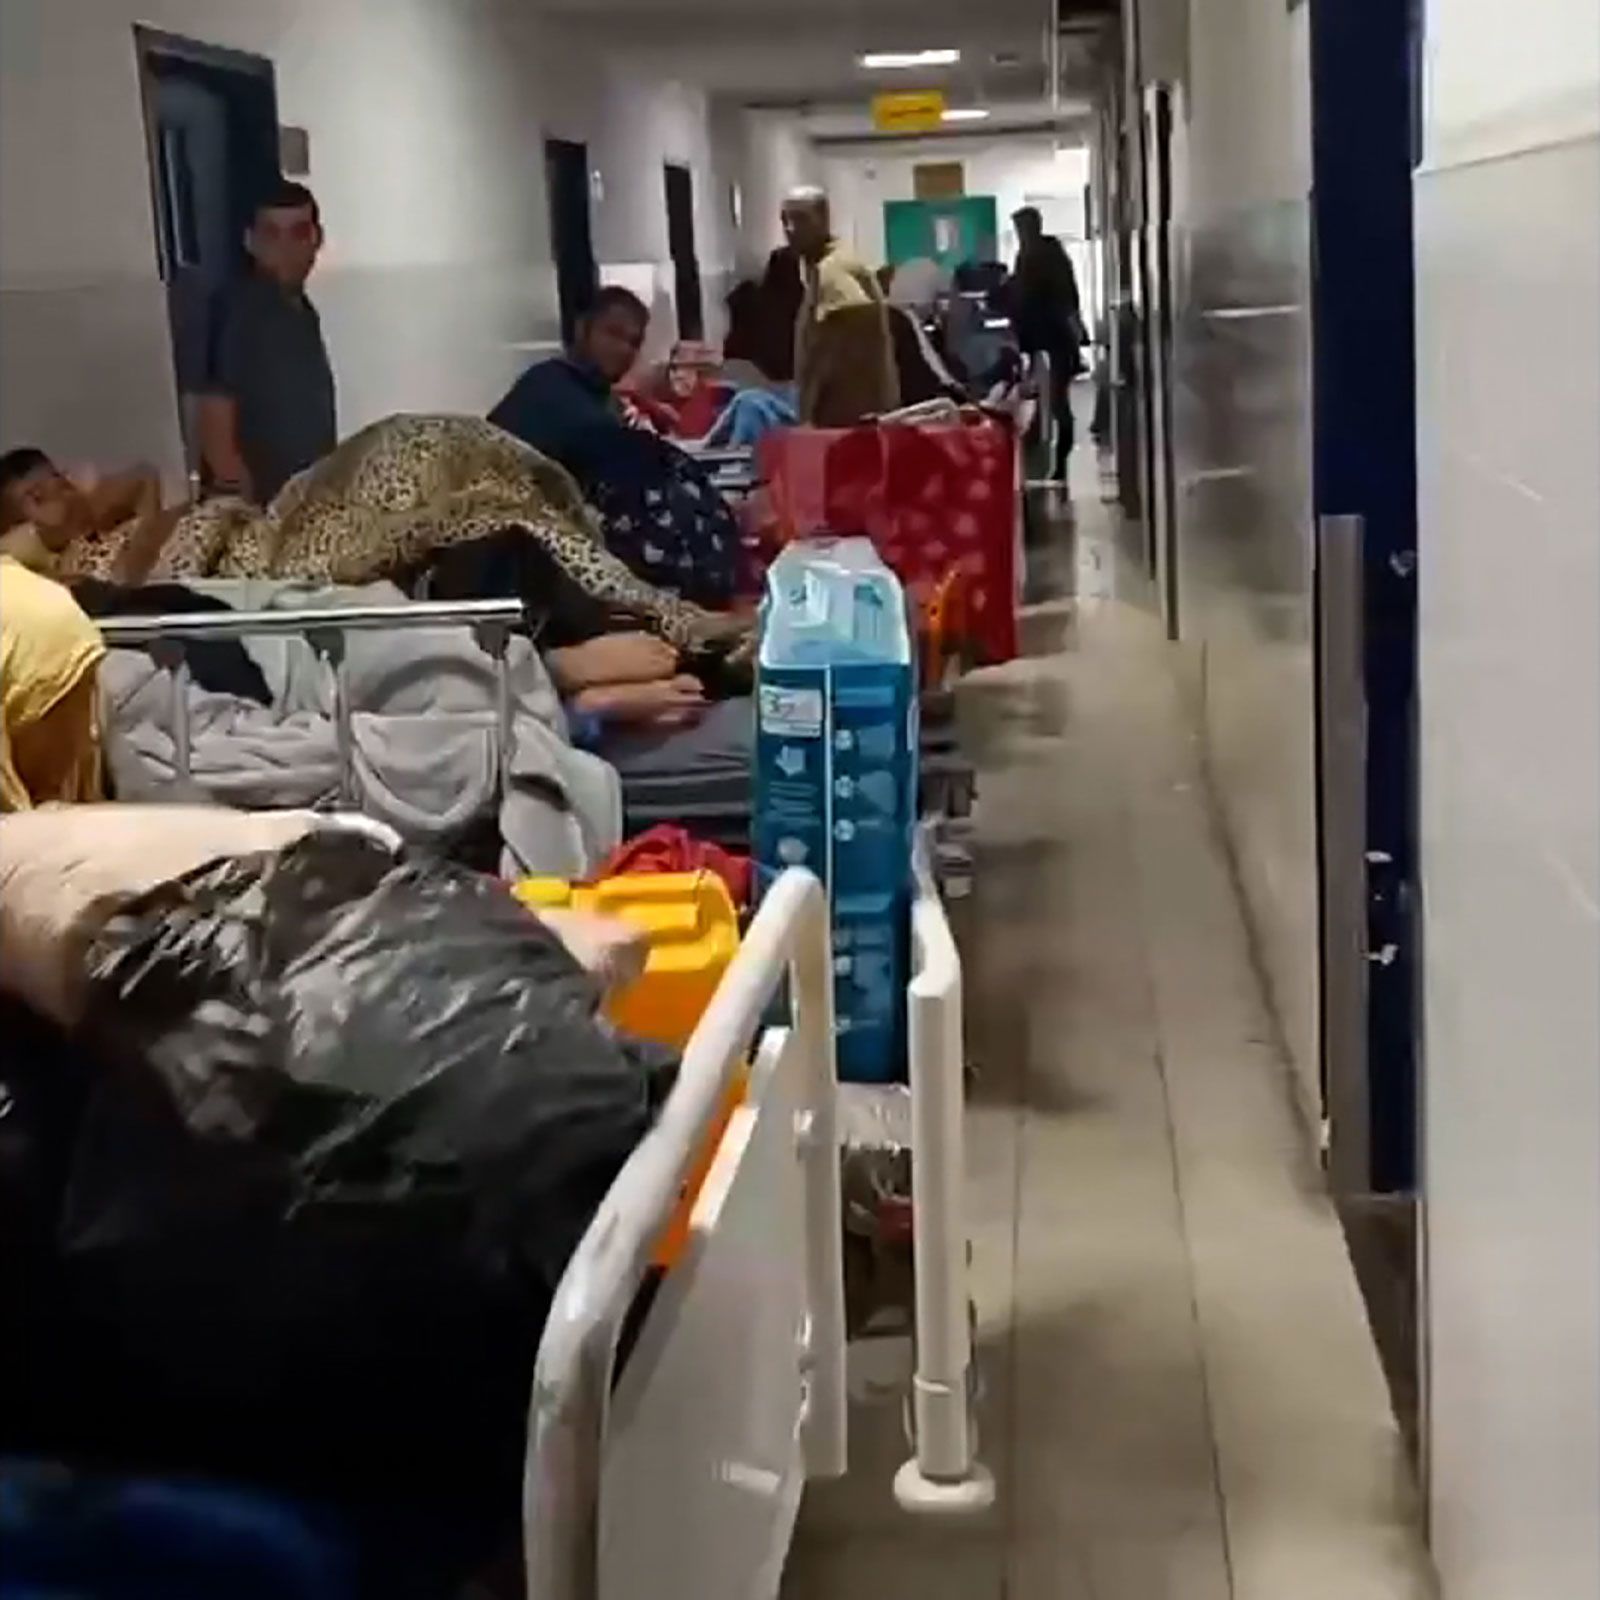 A scene from inside Nasser Hospital on Thursday, February 15.